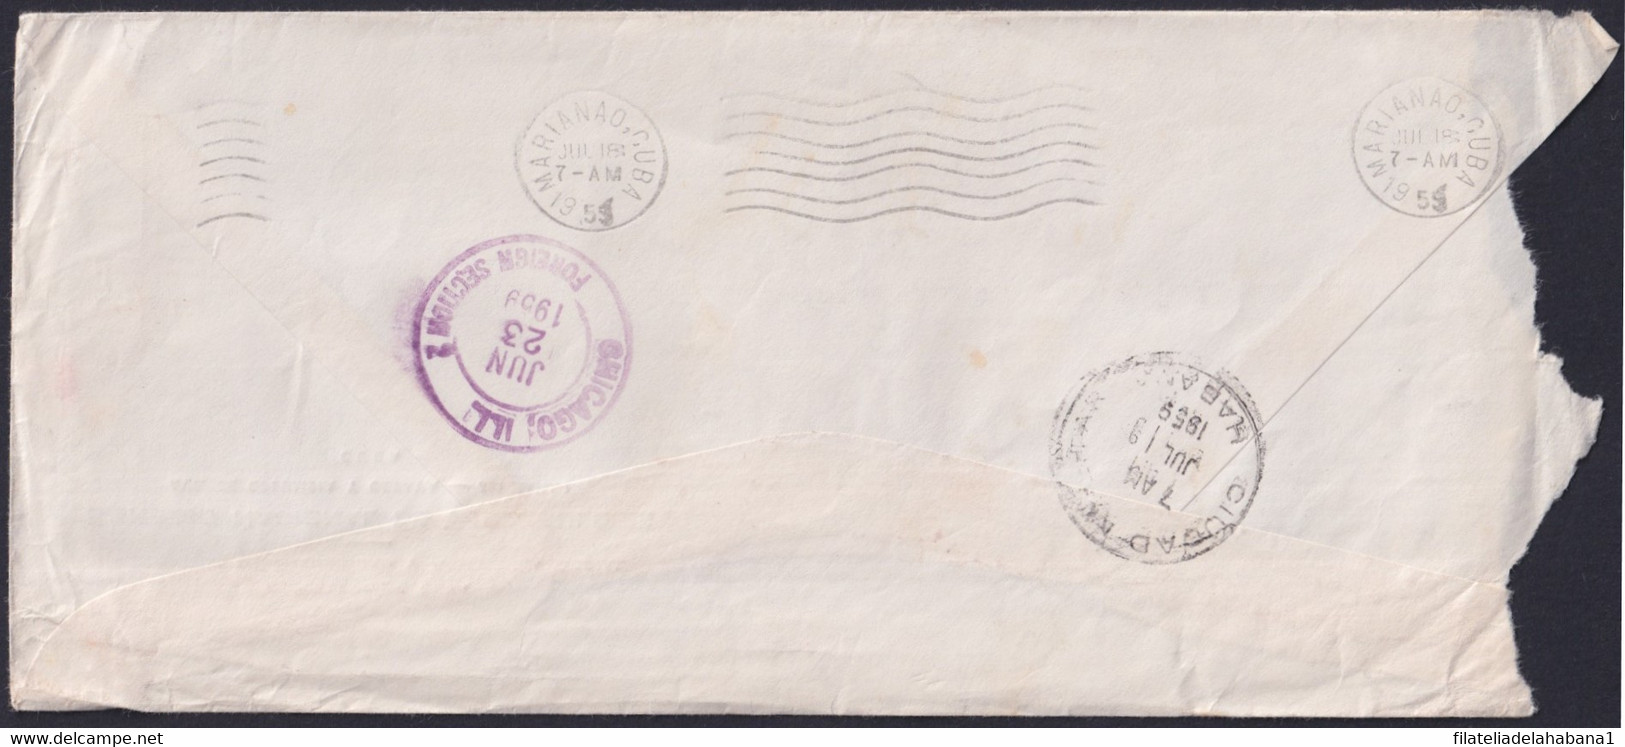 1959-H-39 CUBA 1959 LG-2158 OFFICIAL COVER POSTMARK FORWARDED COVER TO USA. - Cartas & Documentos